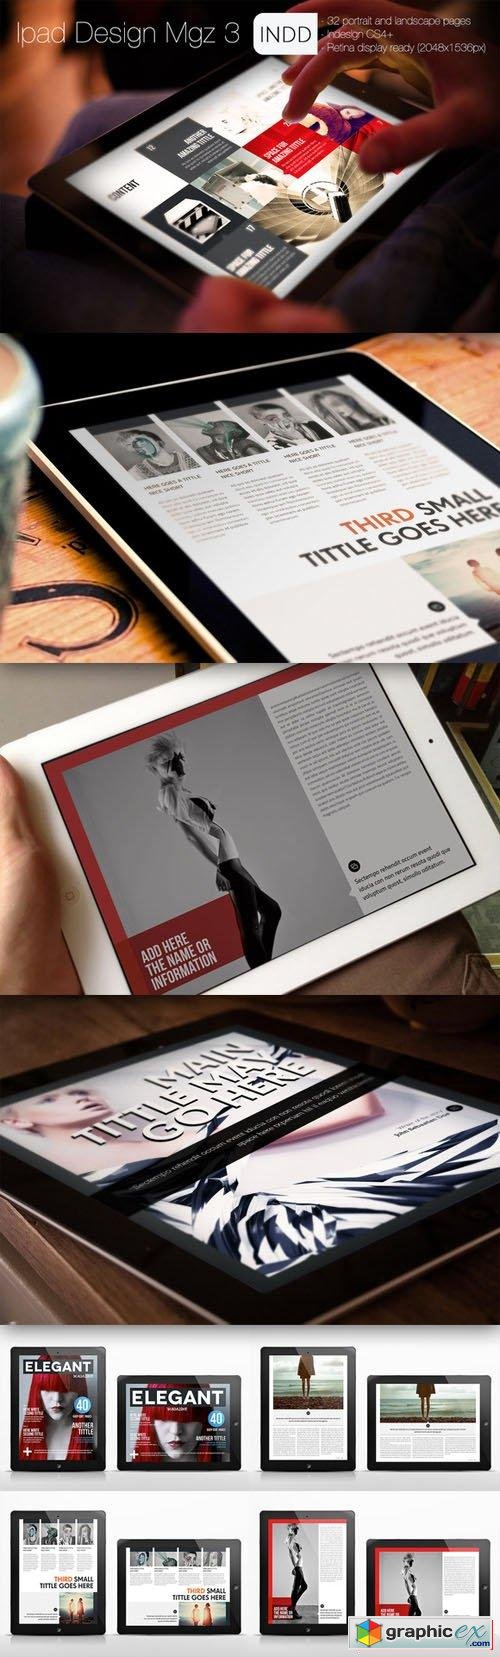  Ipad Design Magazine 3 - CM 105025 